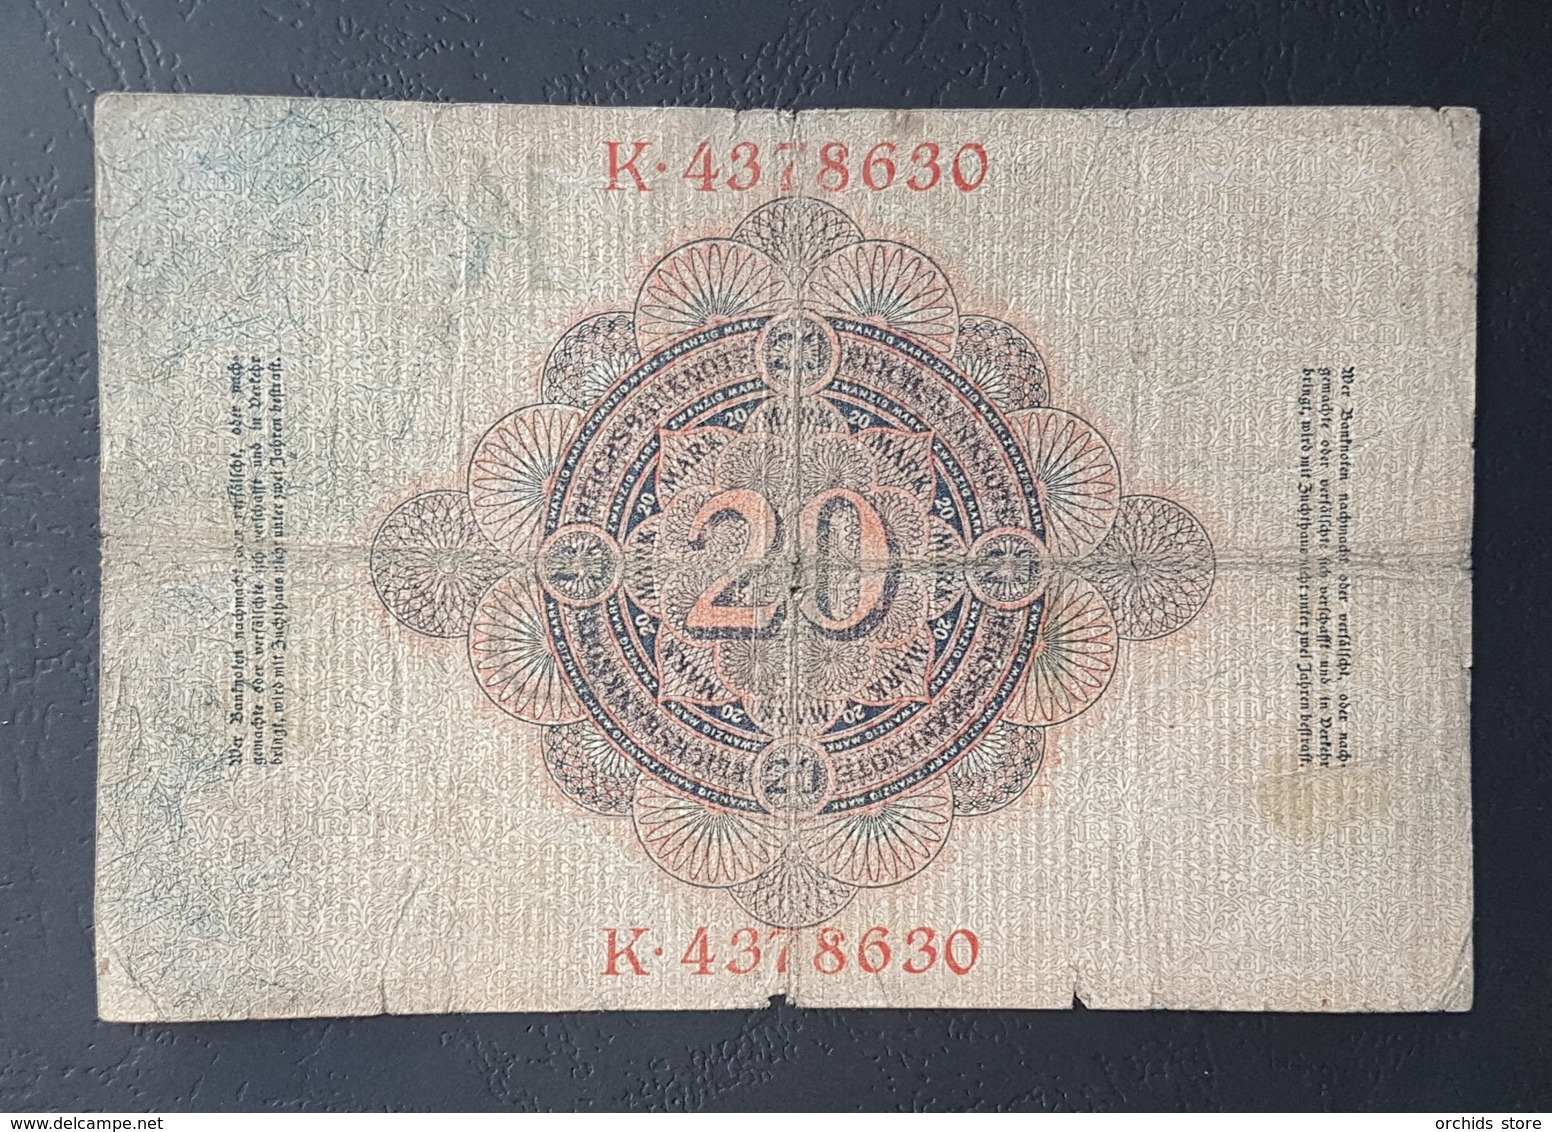 EBN5 - Germany 1906 Banknote 20 Mark Pick 25b #K.4378630 - 20 Mark